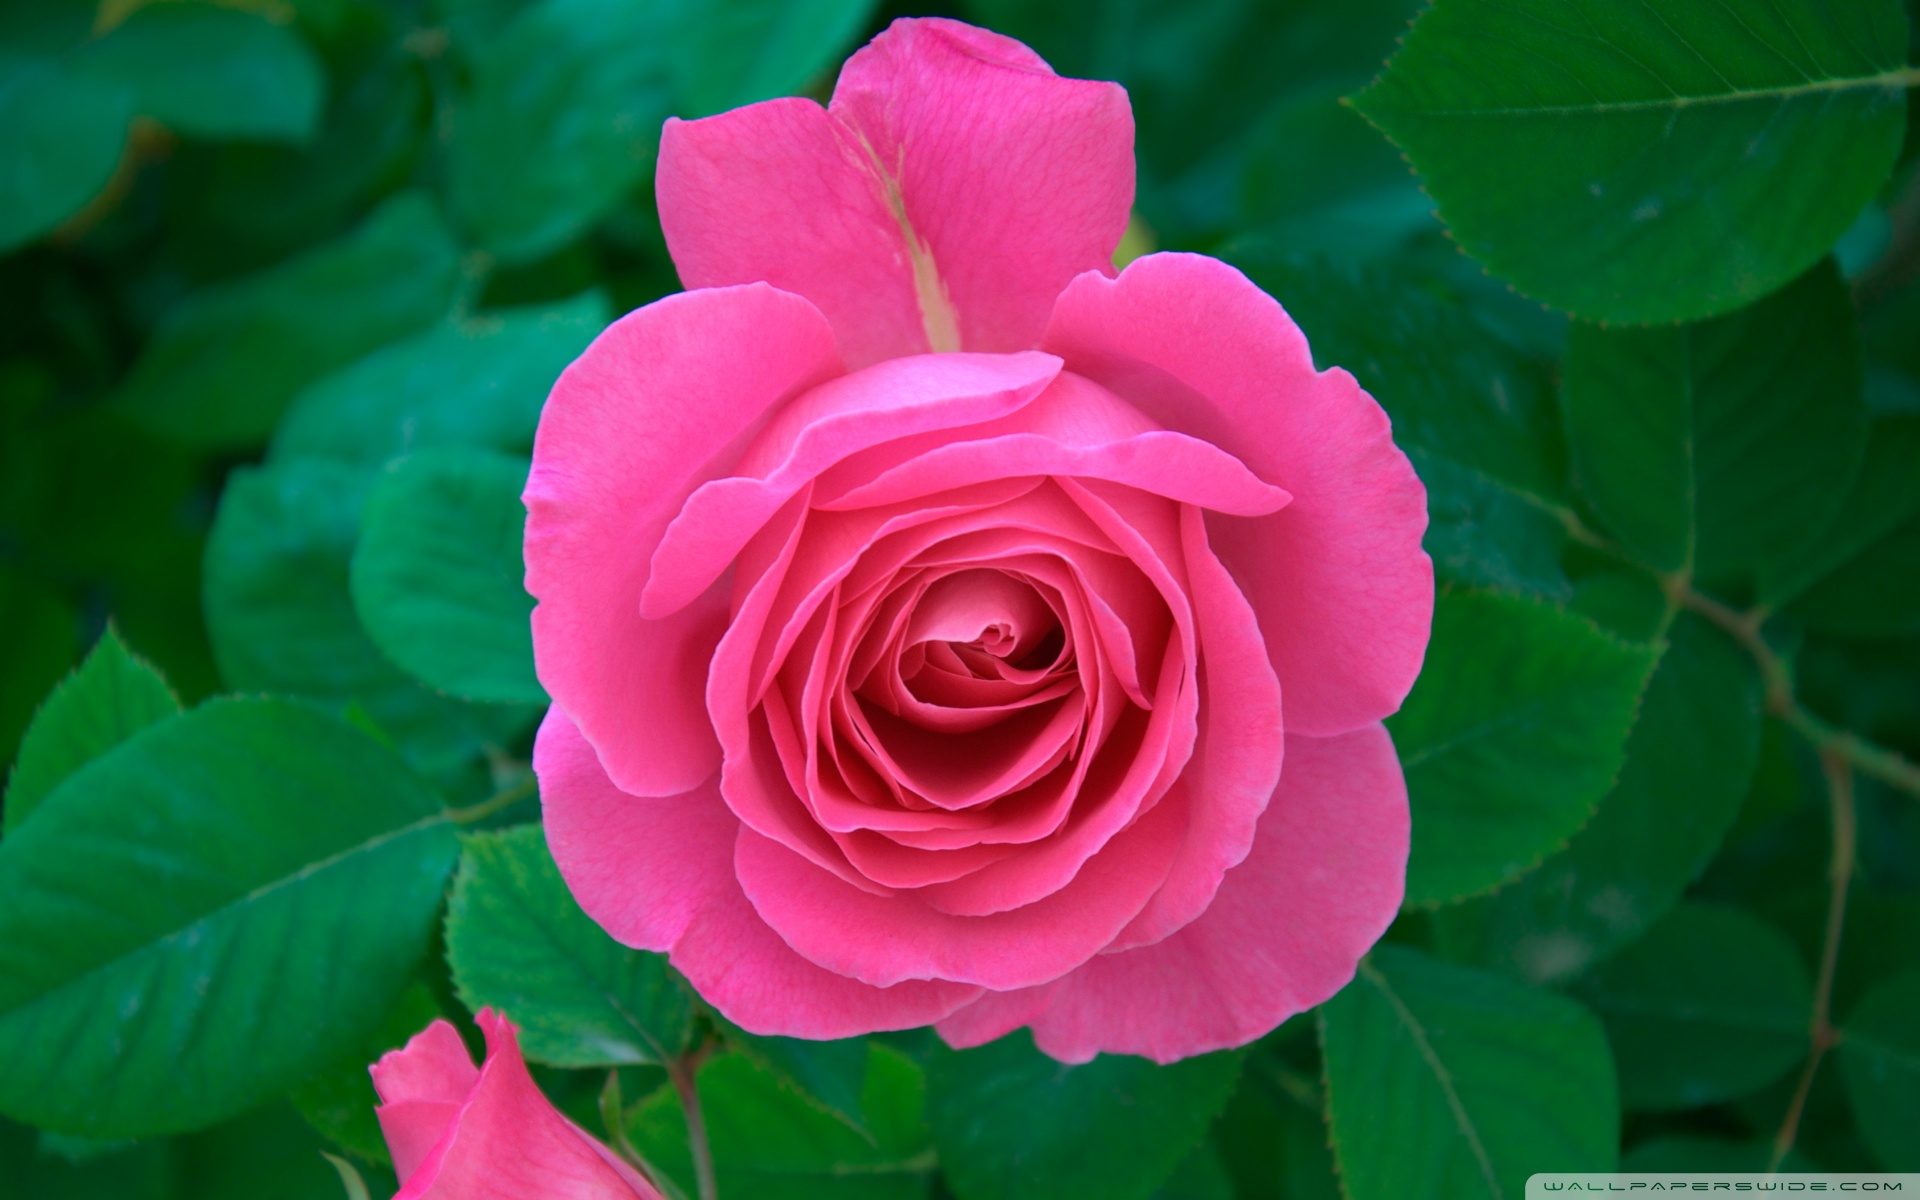 Pink Rose Hd Desktop Wallpaper Widescreen High Definition - Natural Rose Images Hd - HD Wallpaper 